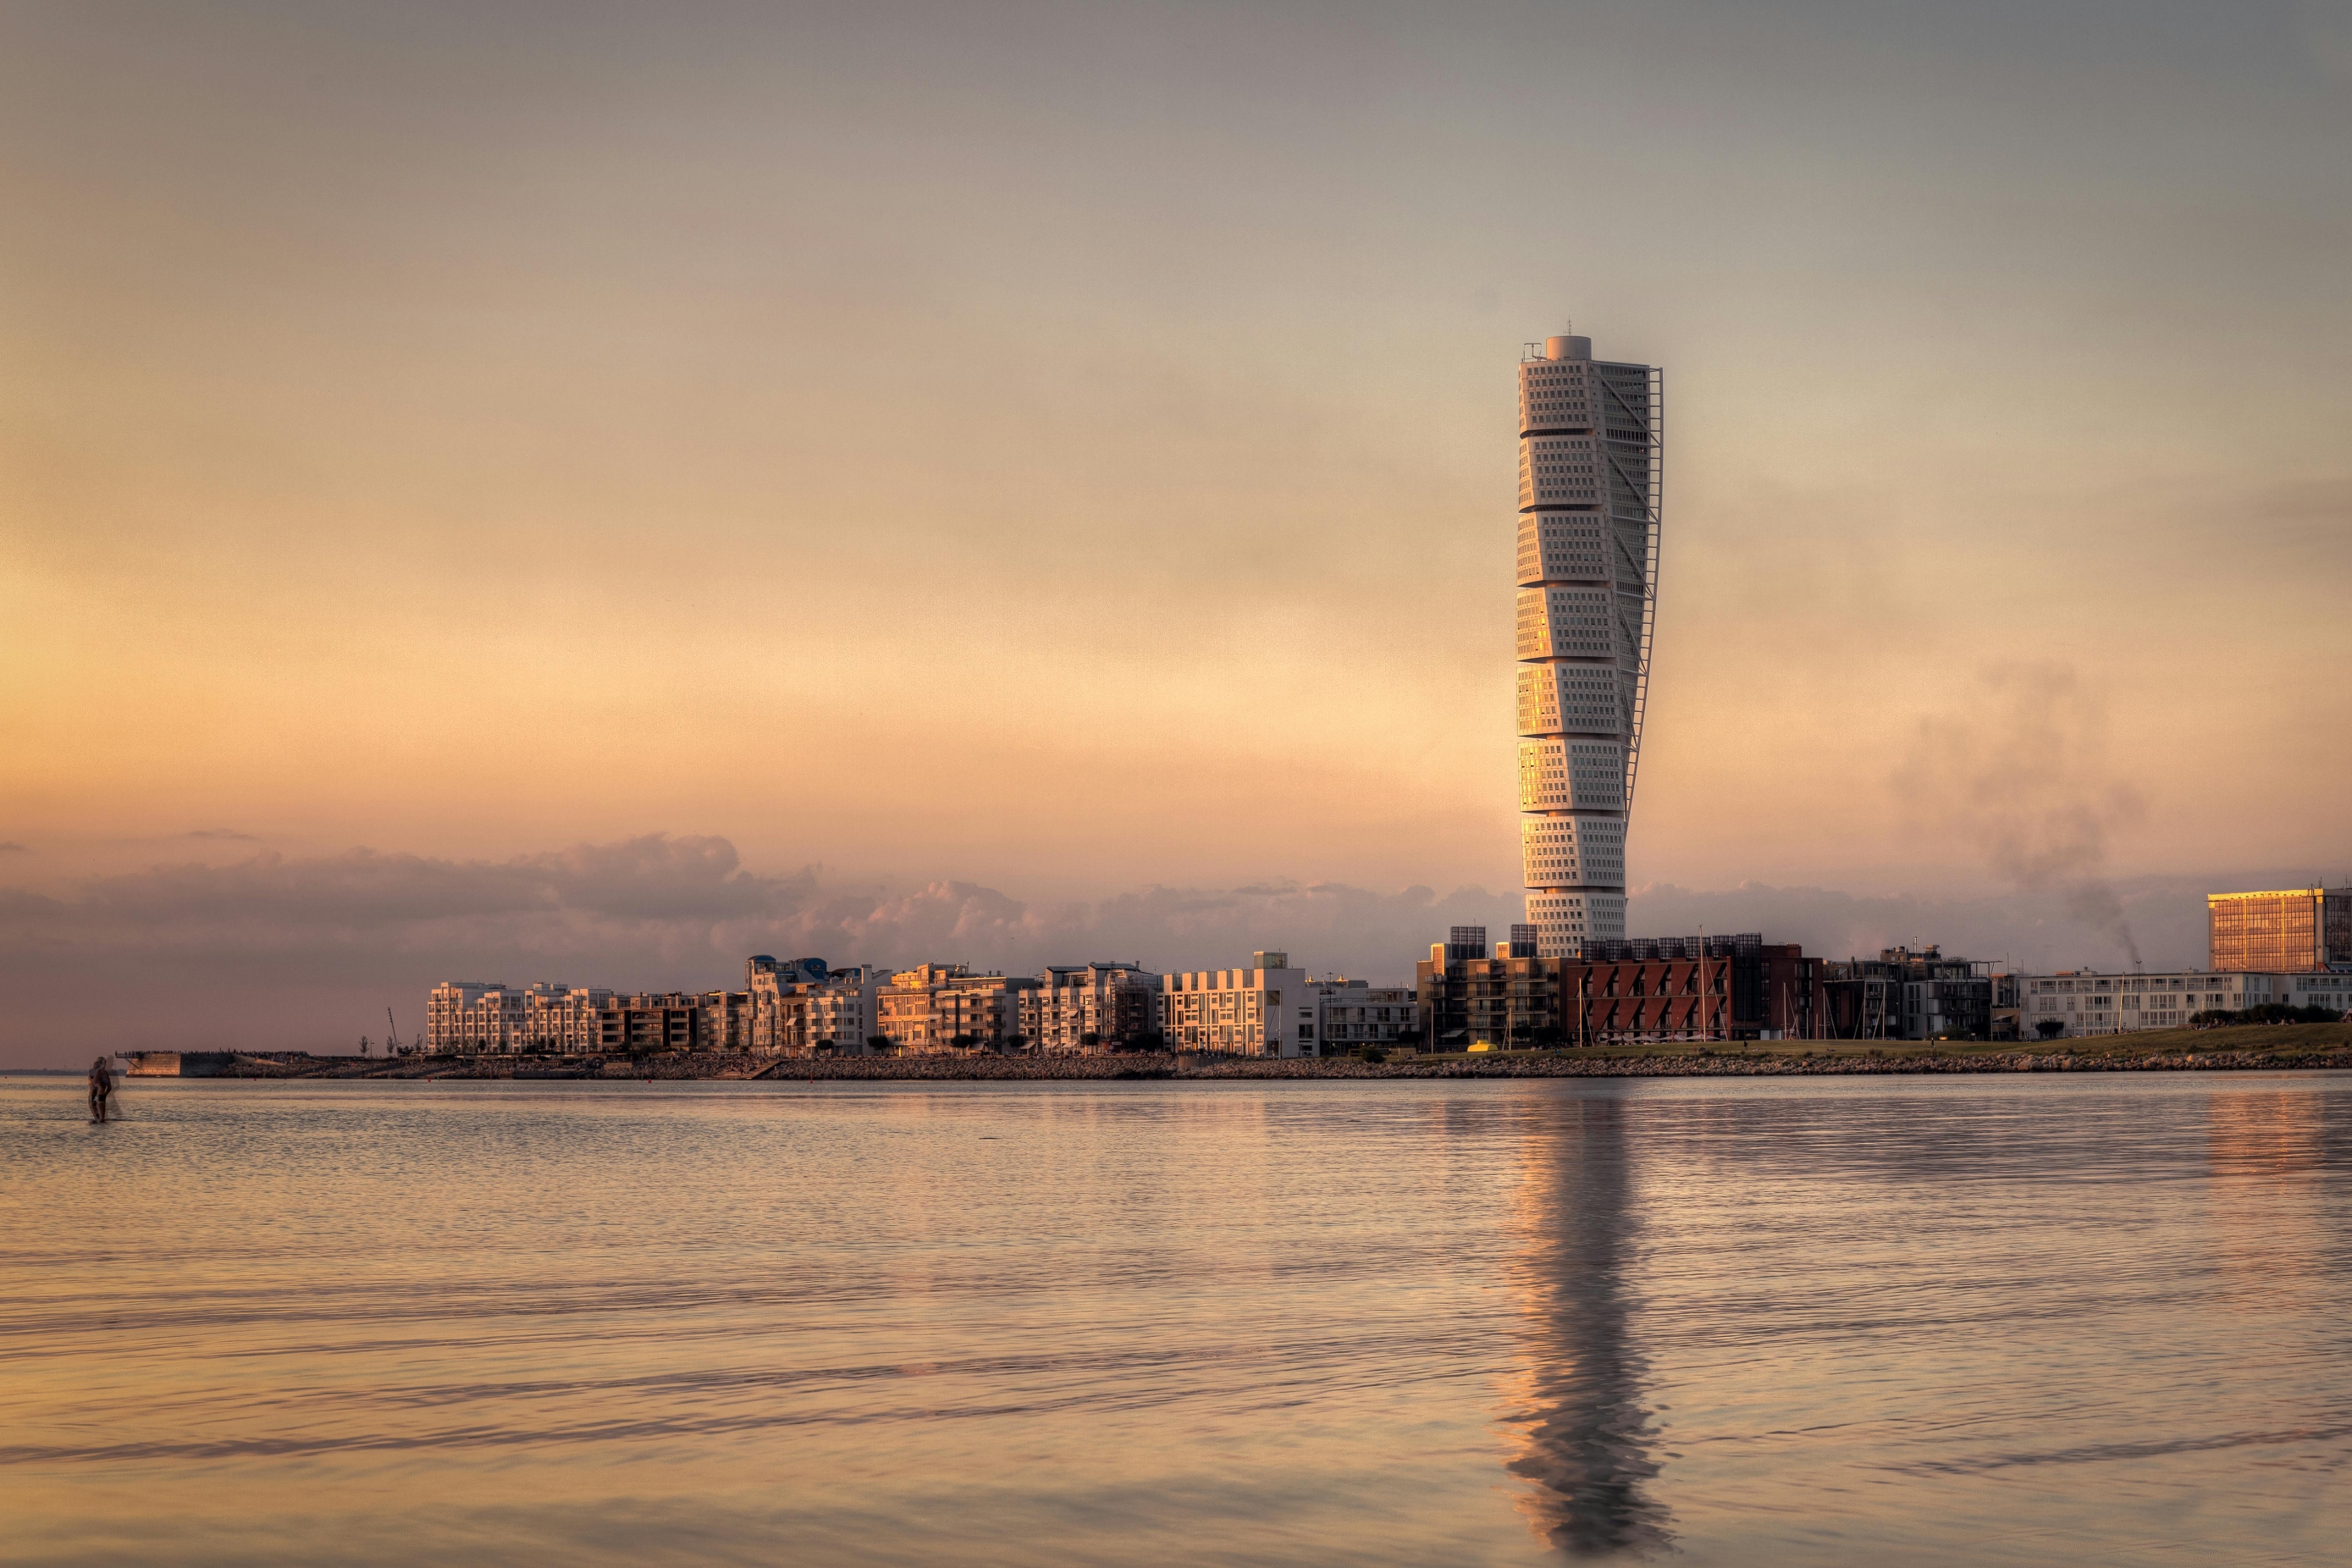 Upoznajte Malmö, švedski grad u kojem se za nekoliko dana održava Eurovizija